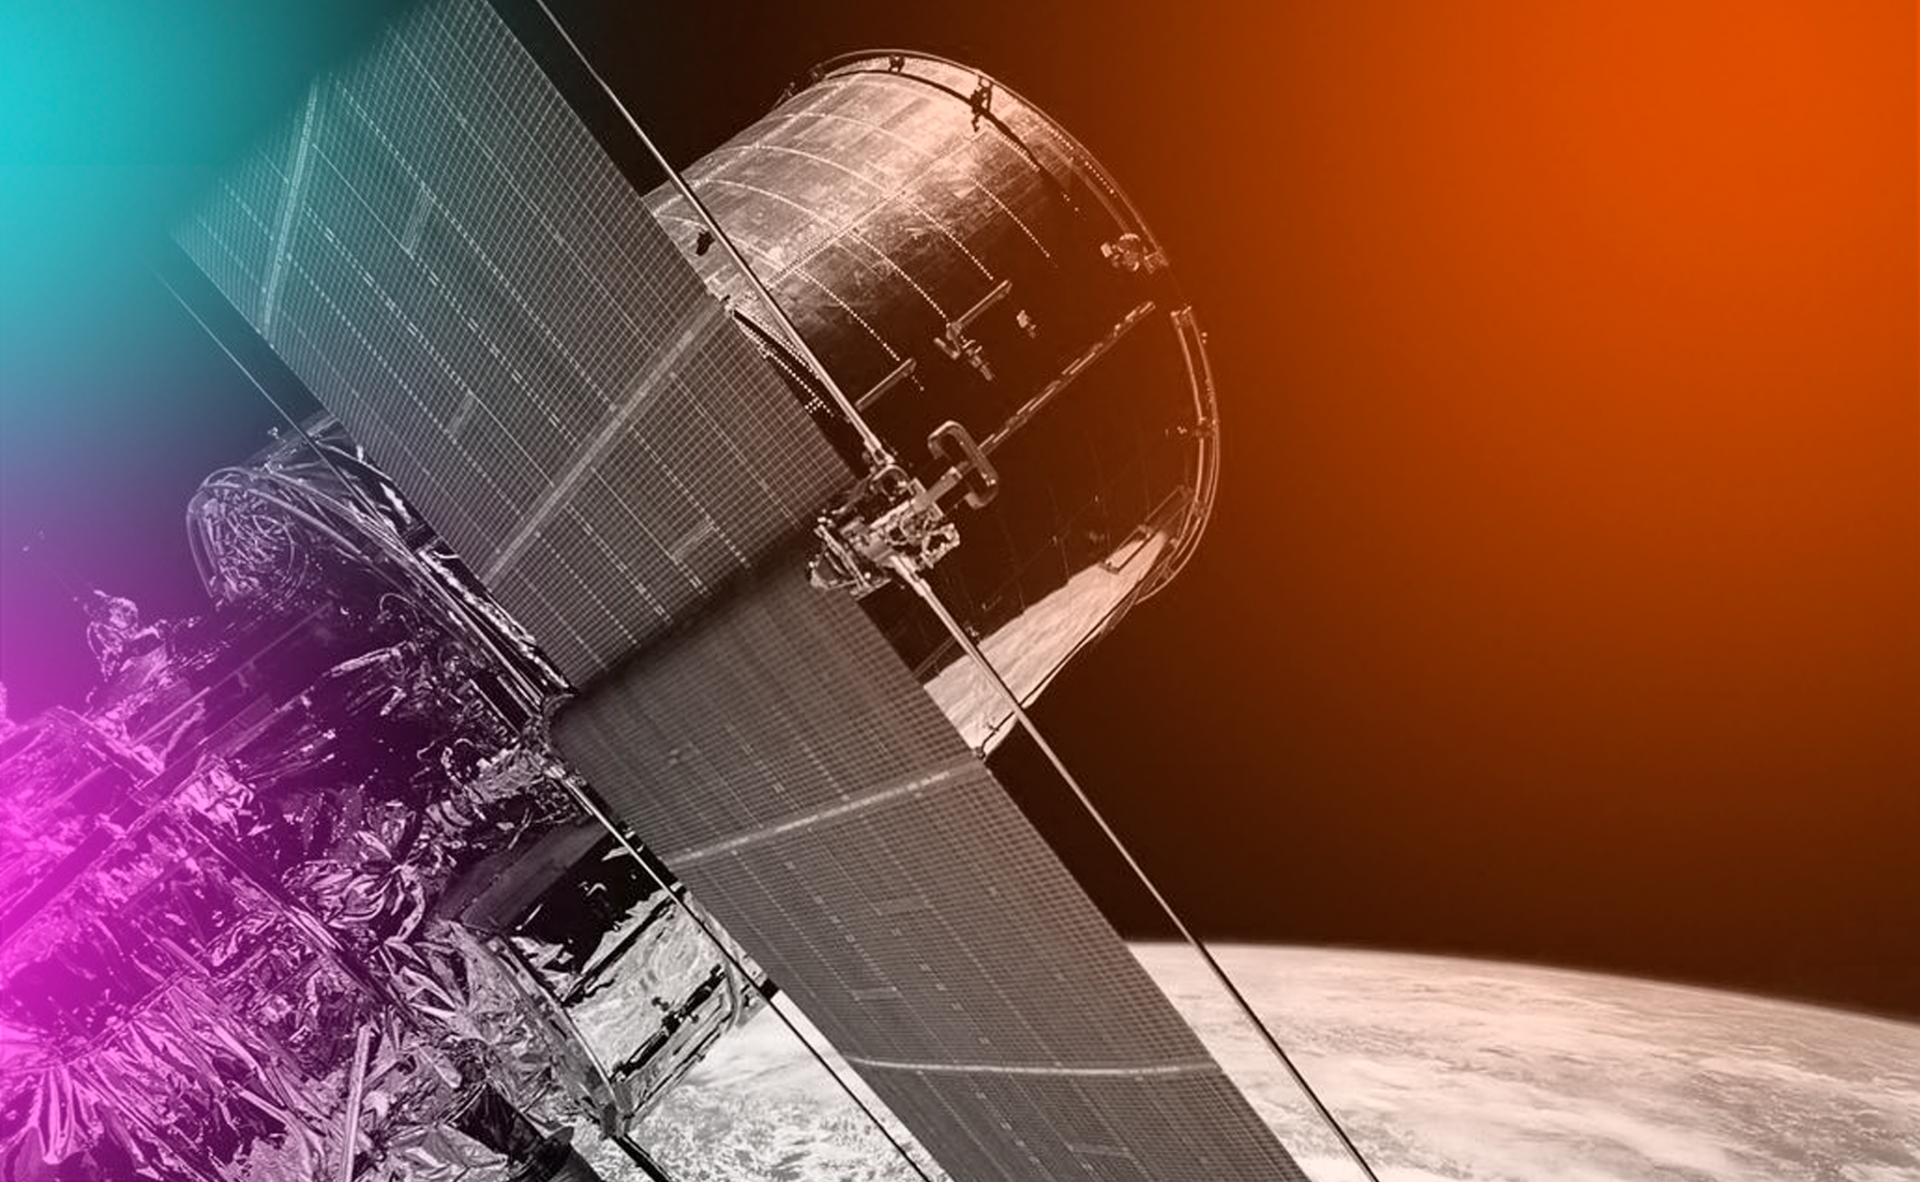 #CuriosidadeDev: “O que o Hubble viu no seu aniversário?”